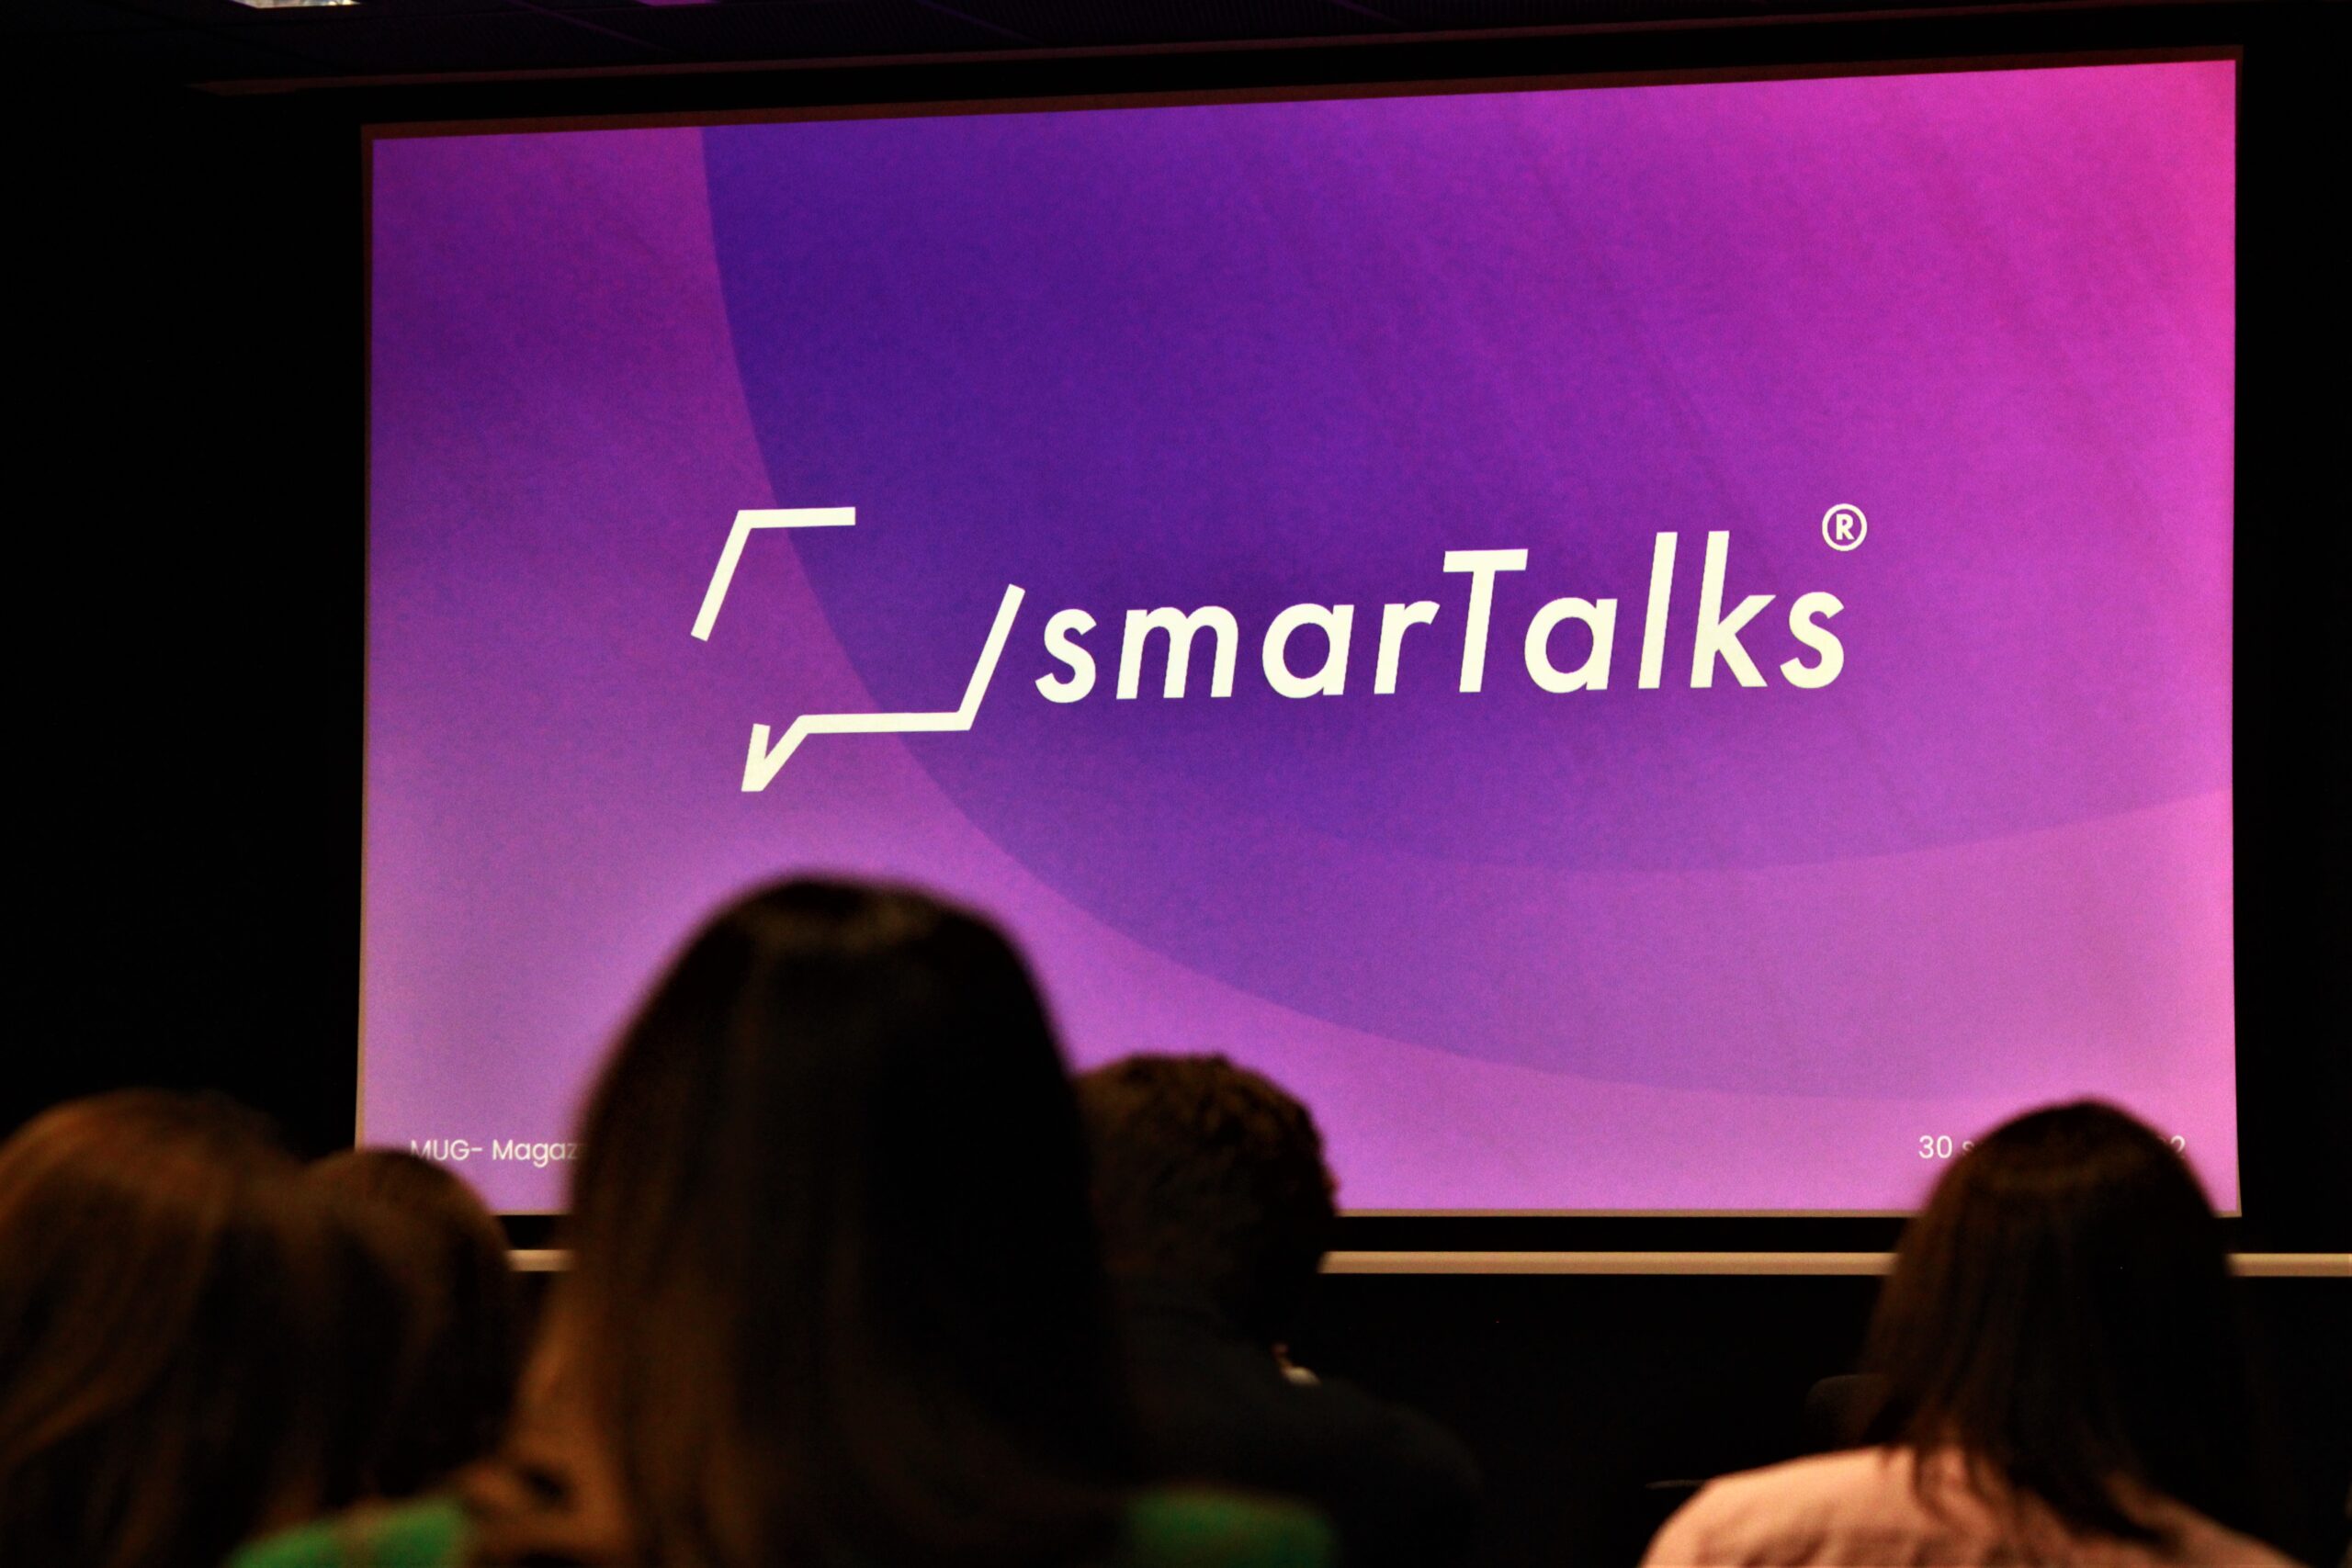 Inaugurazione smarTalks: talks, dibattiti ed emozioni all'evento ufficiale, ripercorriamolo insieme. Ecco cosa è successo